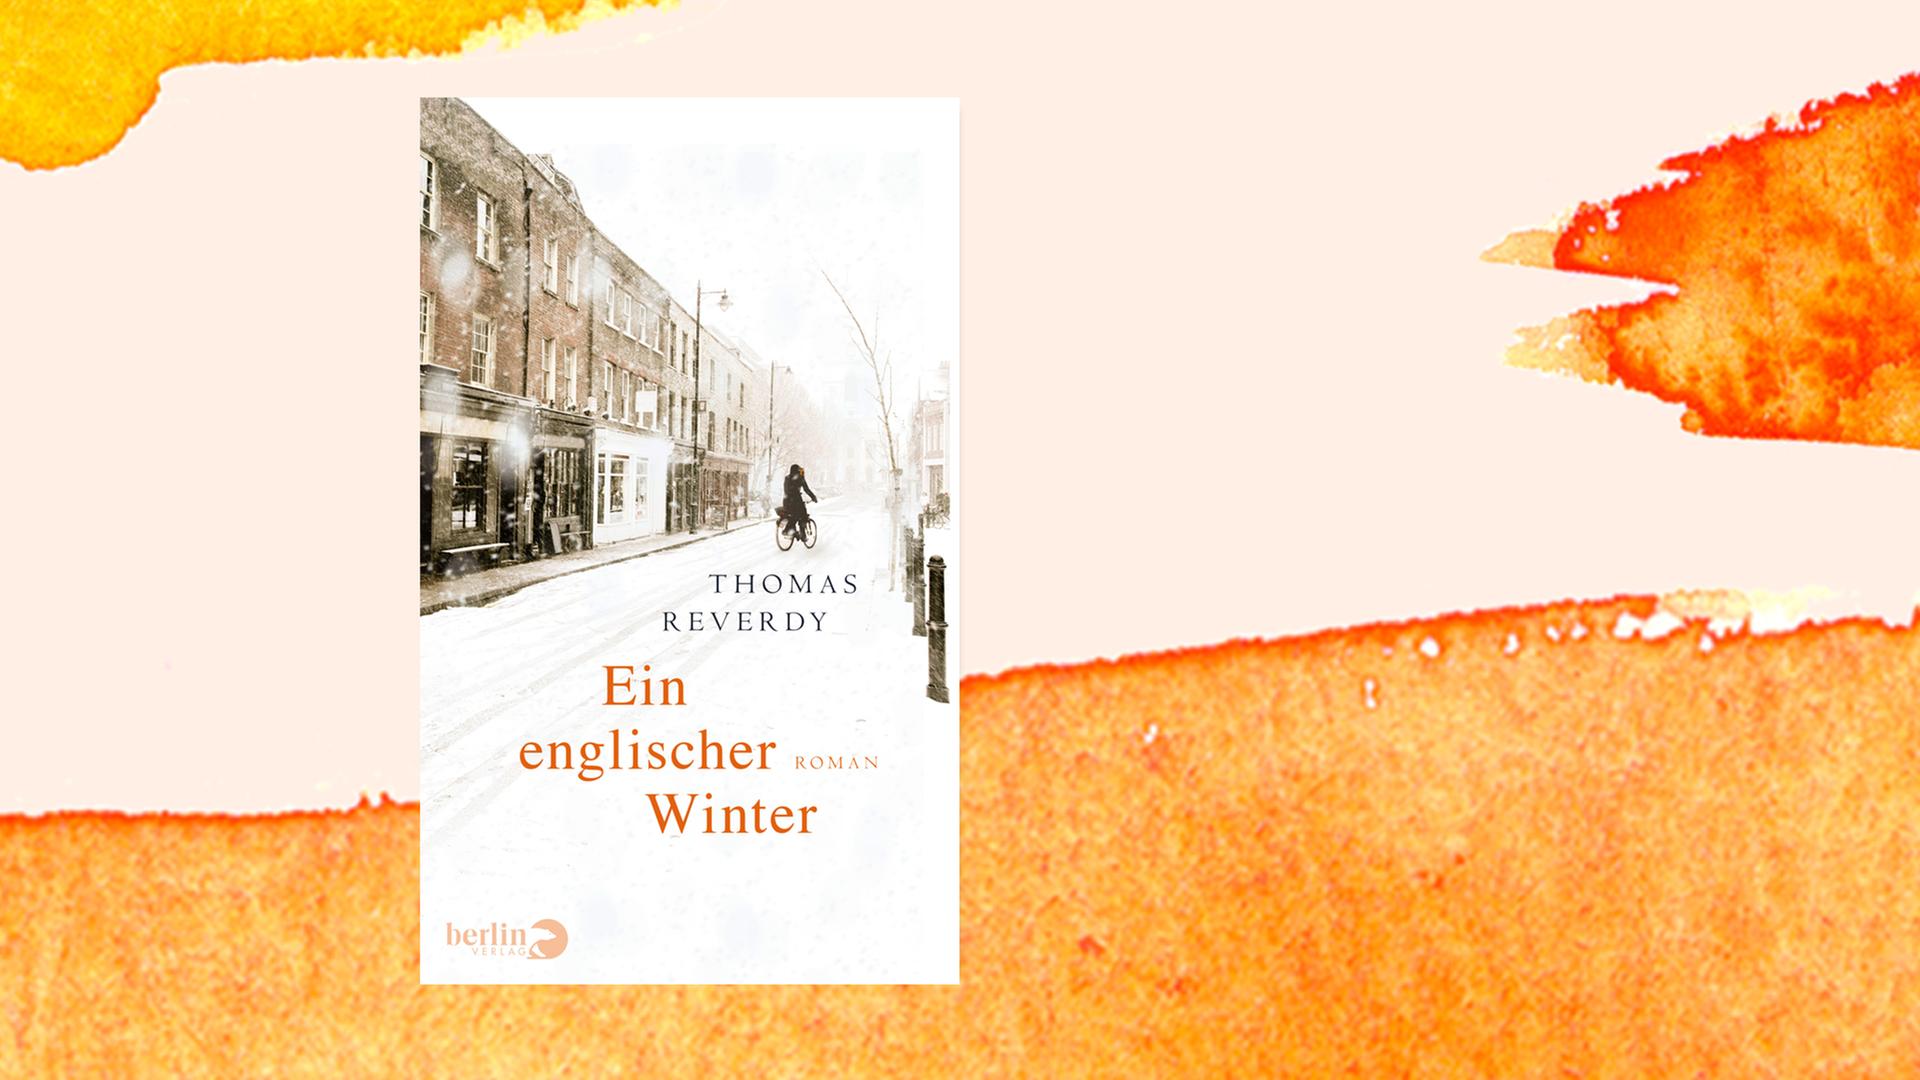 Das Cover des Buches "Ein englischer Winter" von Thomas B. Reverdy auf orangefarbenem Aquarell-Hintergrund.